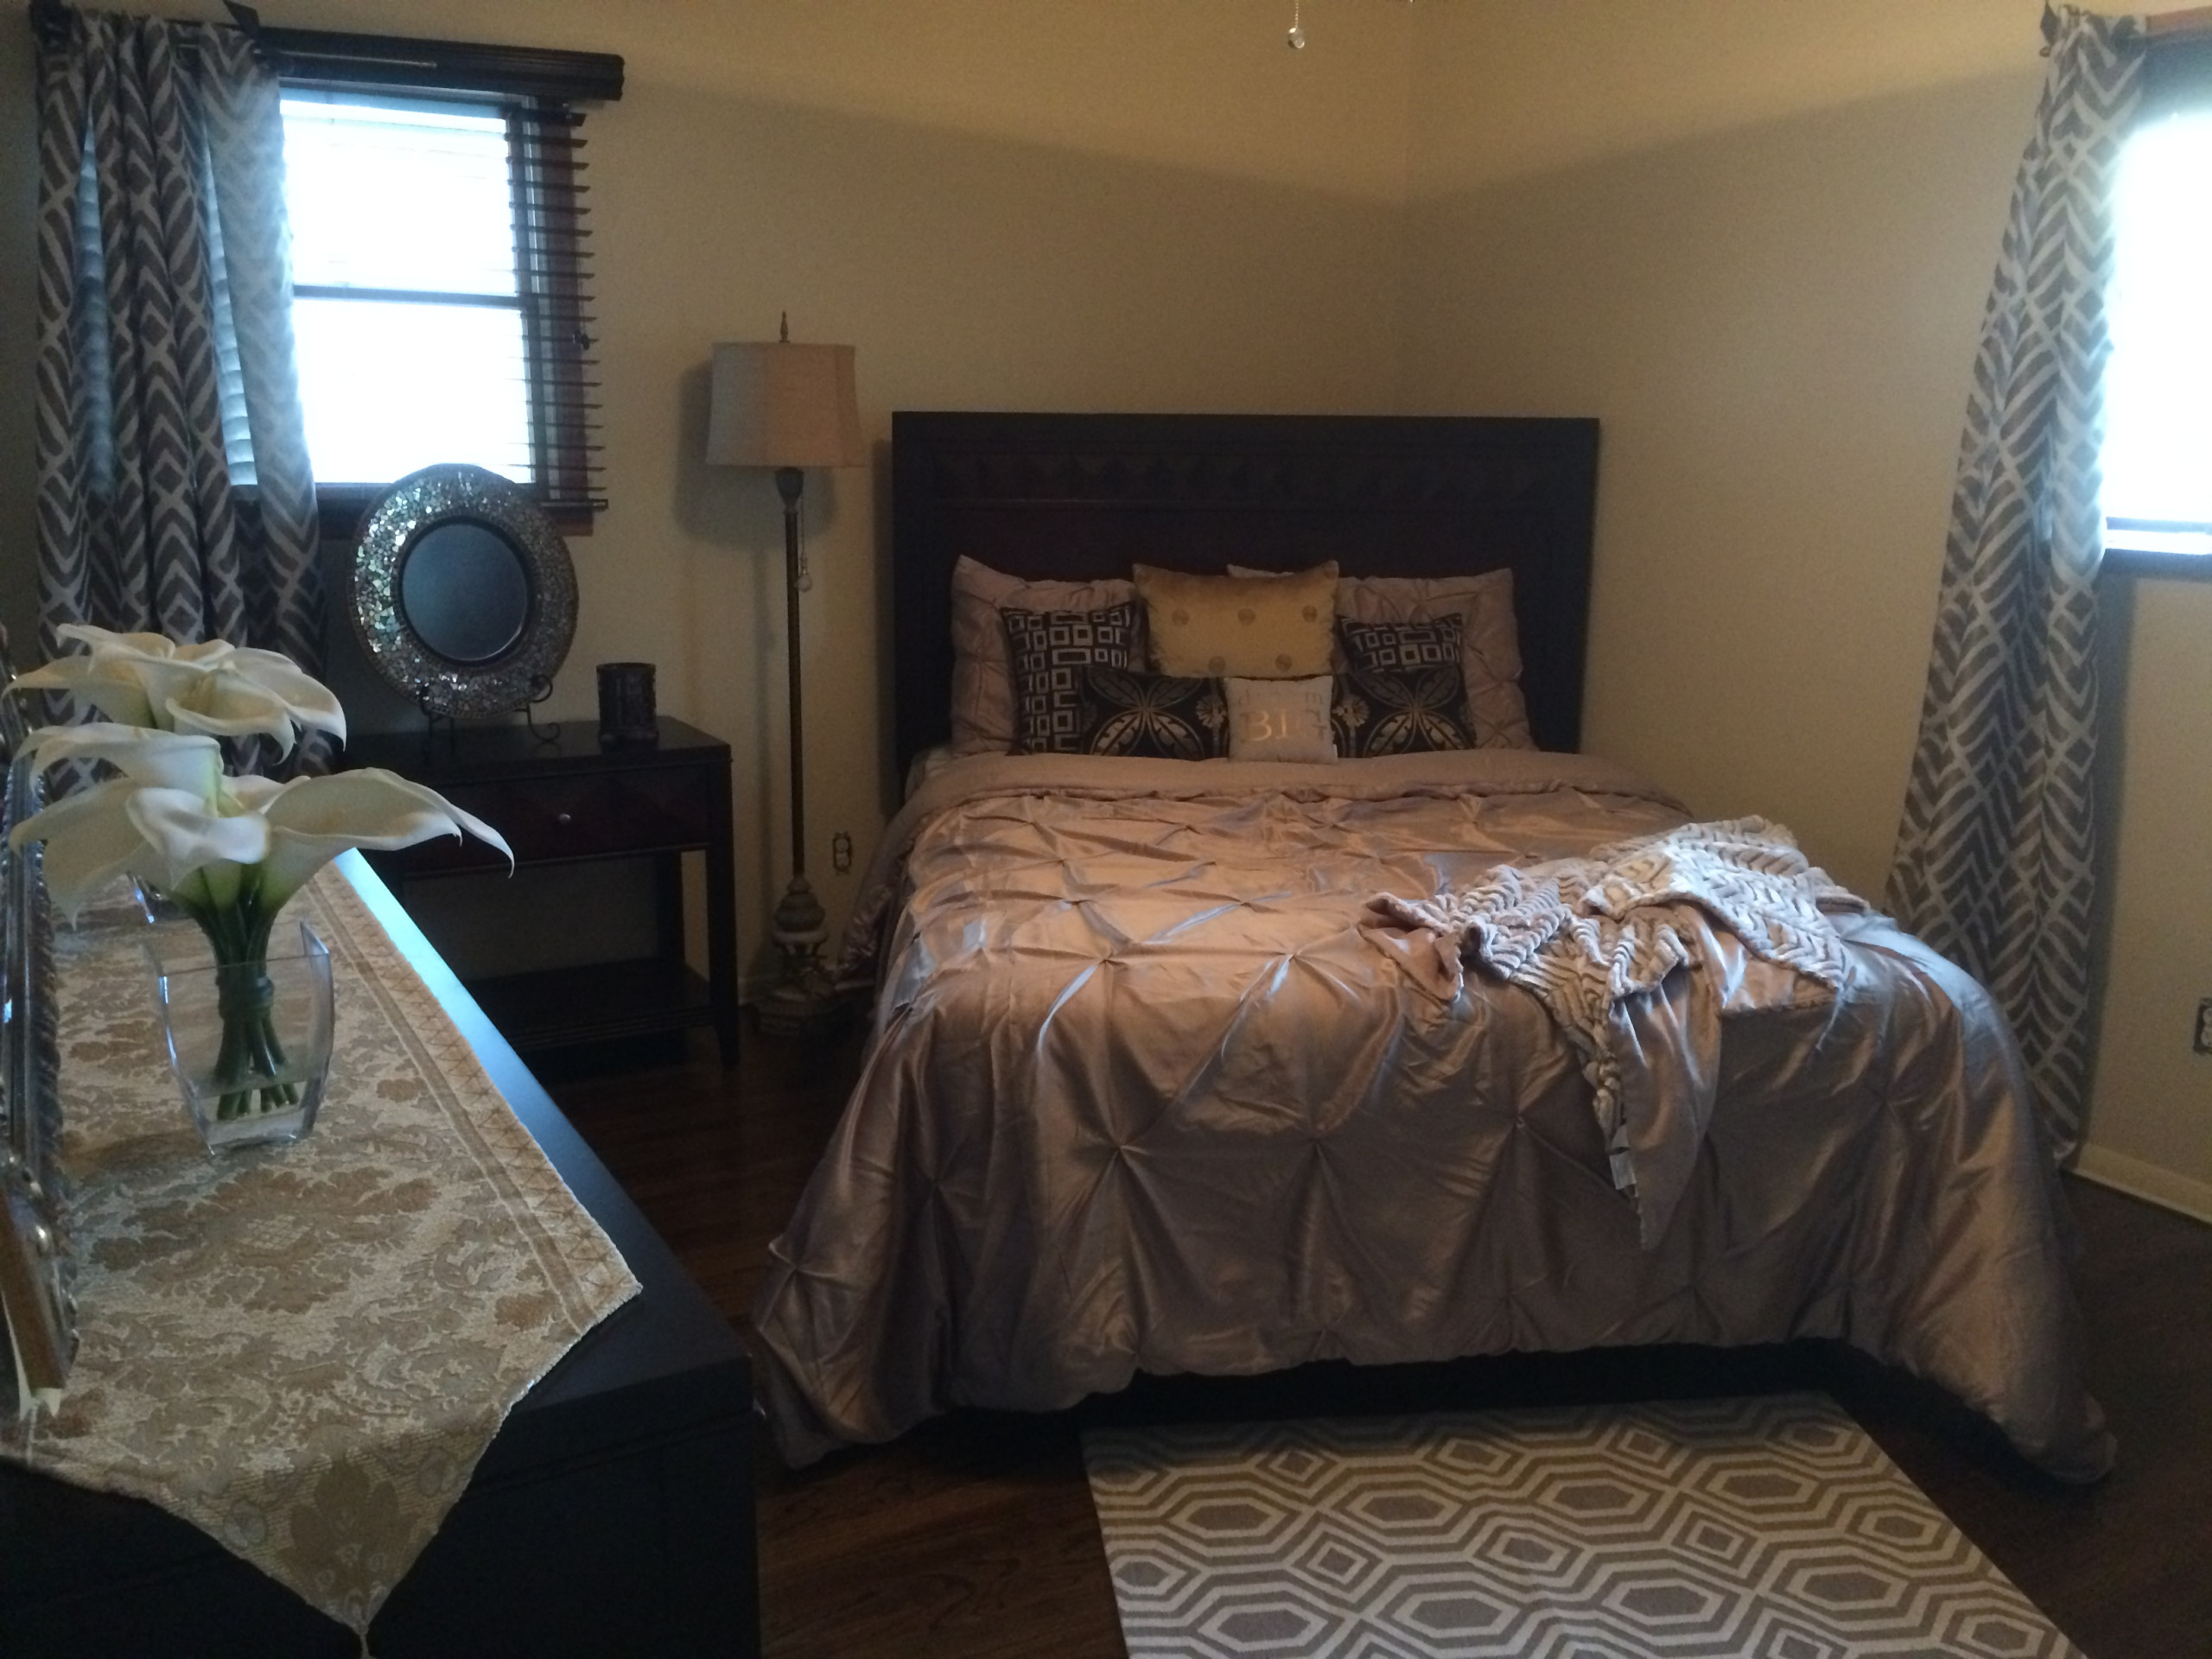 Redesign - Bedroom (Ewing)